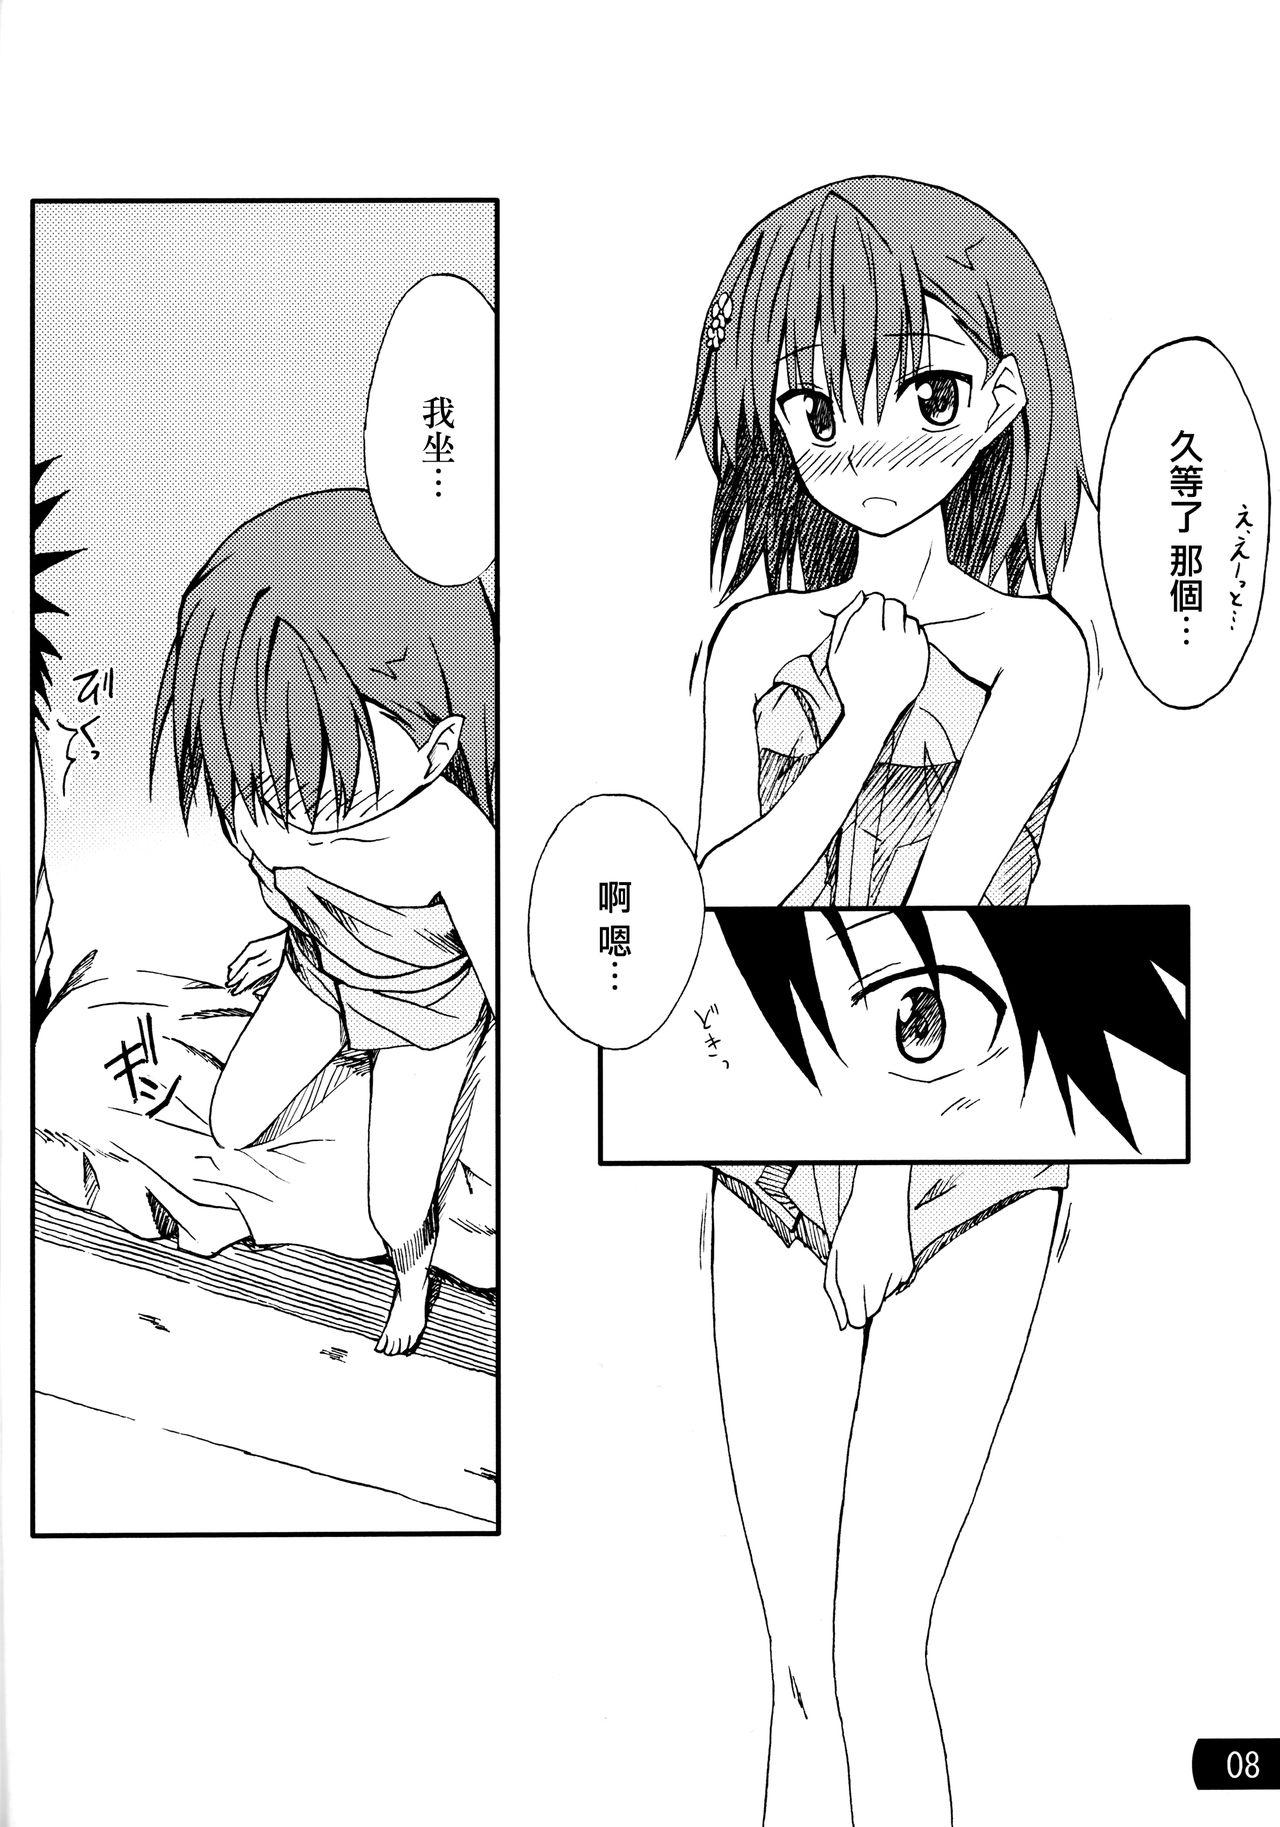 Naked Sluts Toaru mousou no chou denji hon 02 - Toaru kagaku no railgun Glam - Page 7